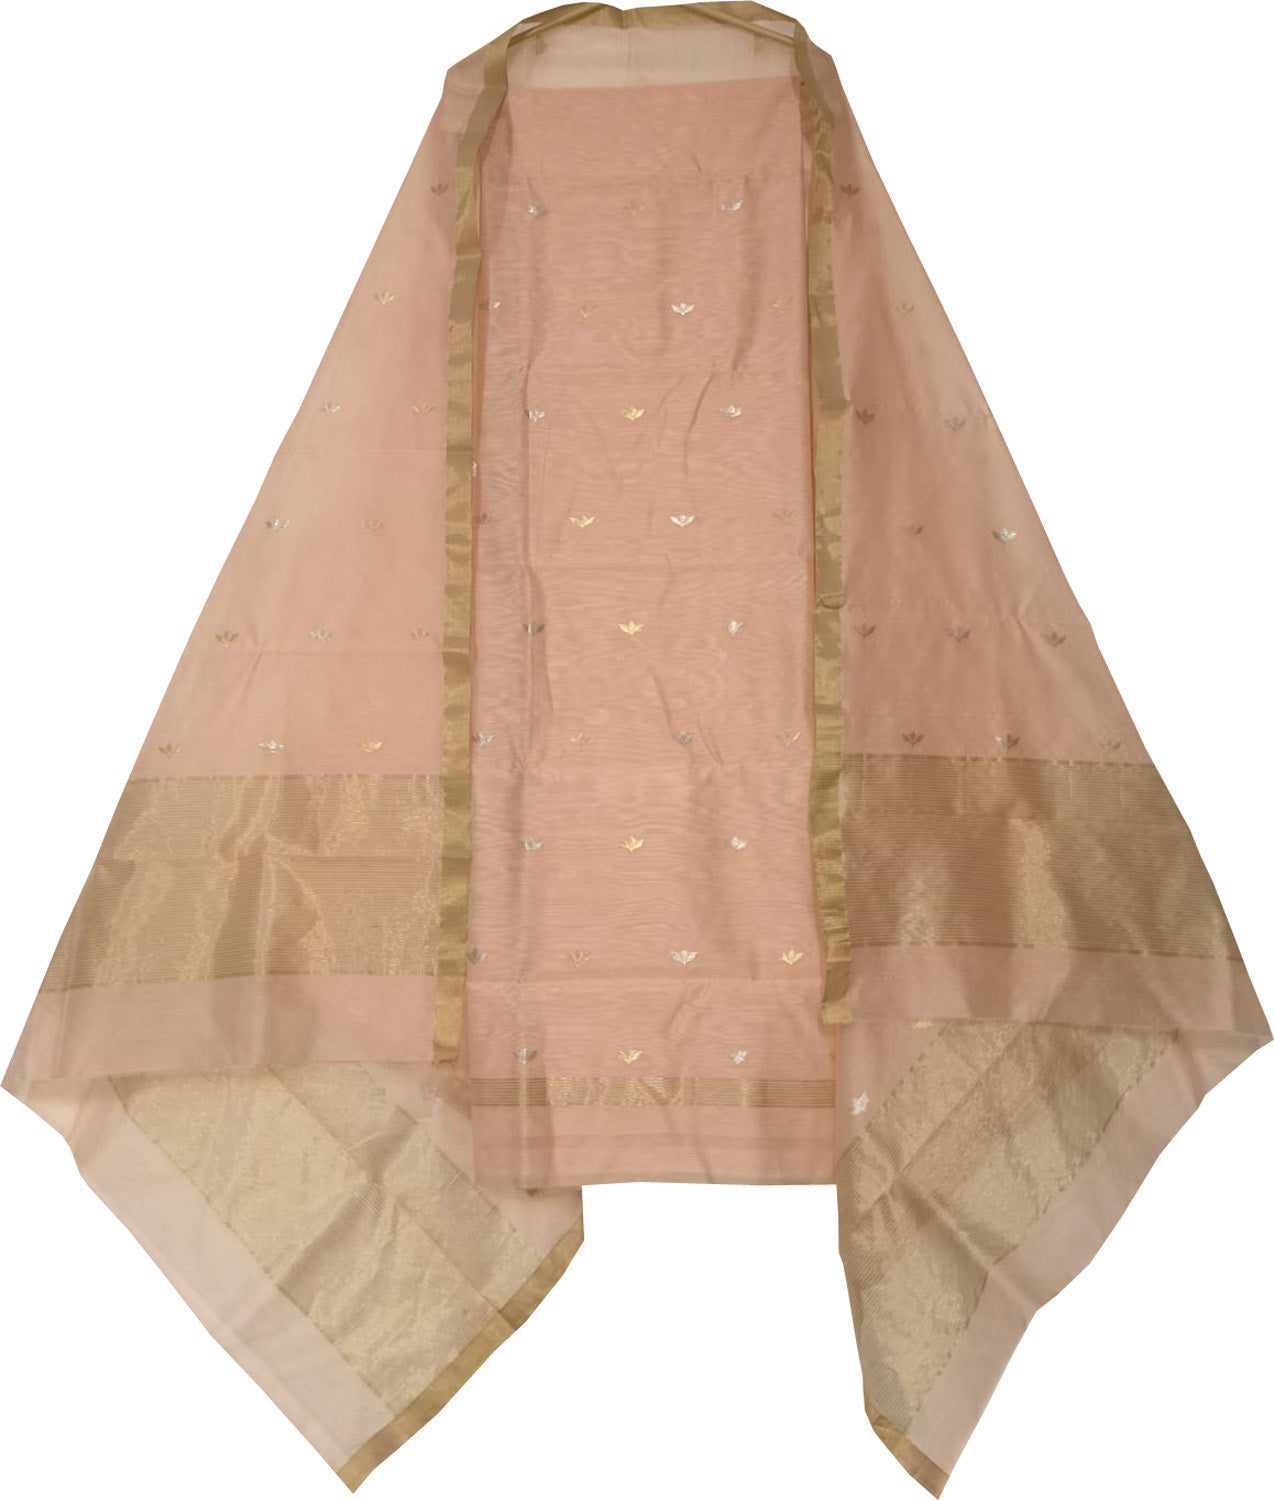 Pretty in Pink: Chanderi Handloom Cotton Silk Suit - Luxurion World